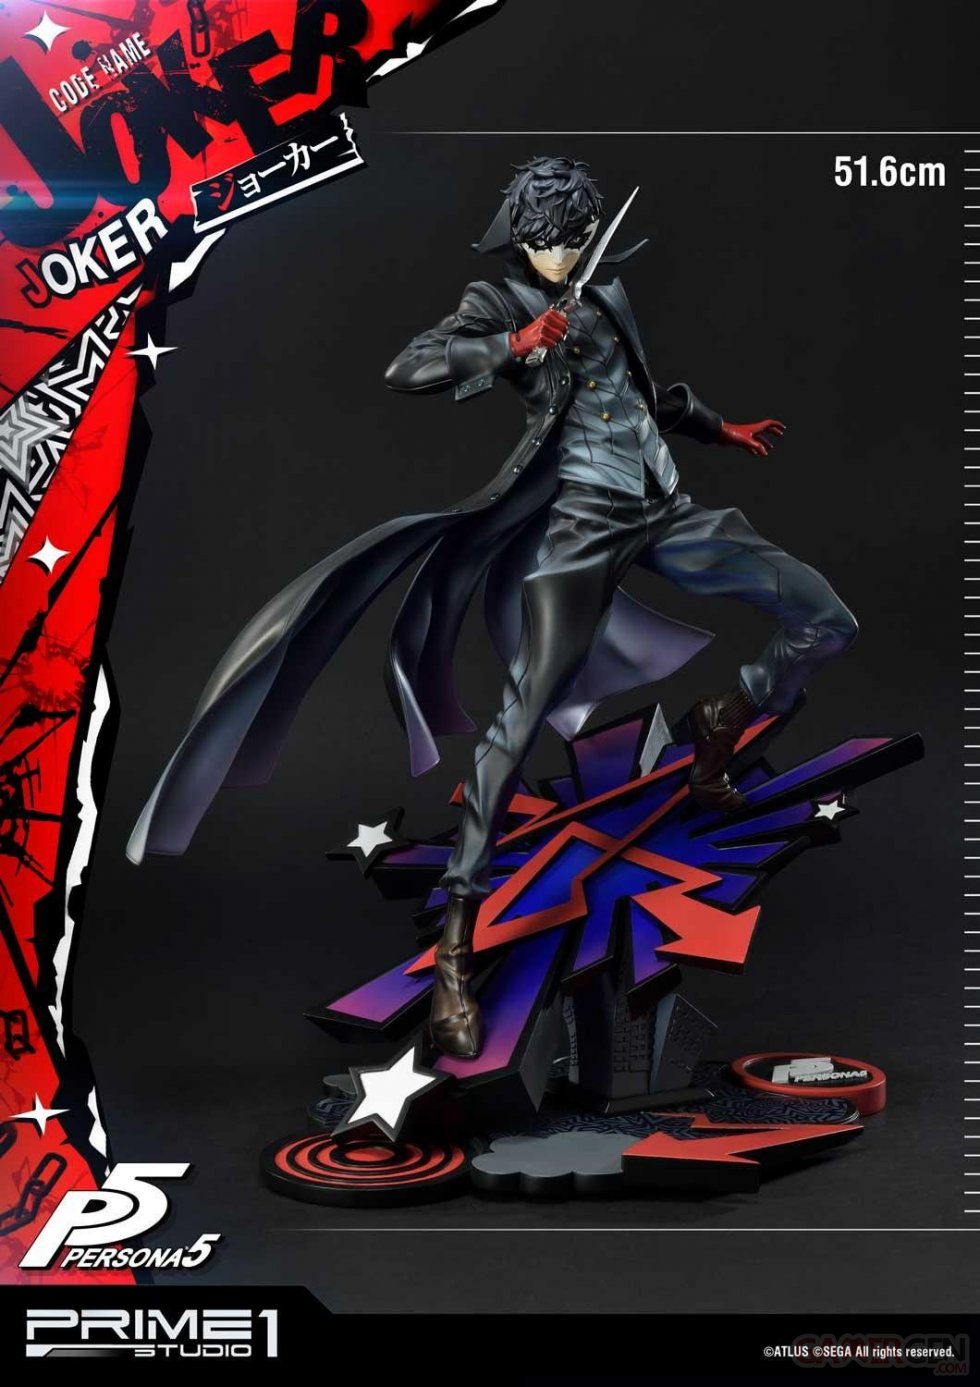 Persona-5-Joker-Prime-1-Studio-statuette-06-02-07-2020